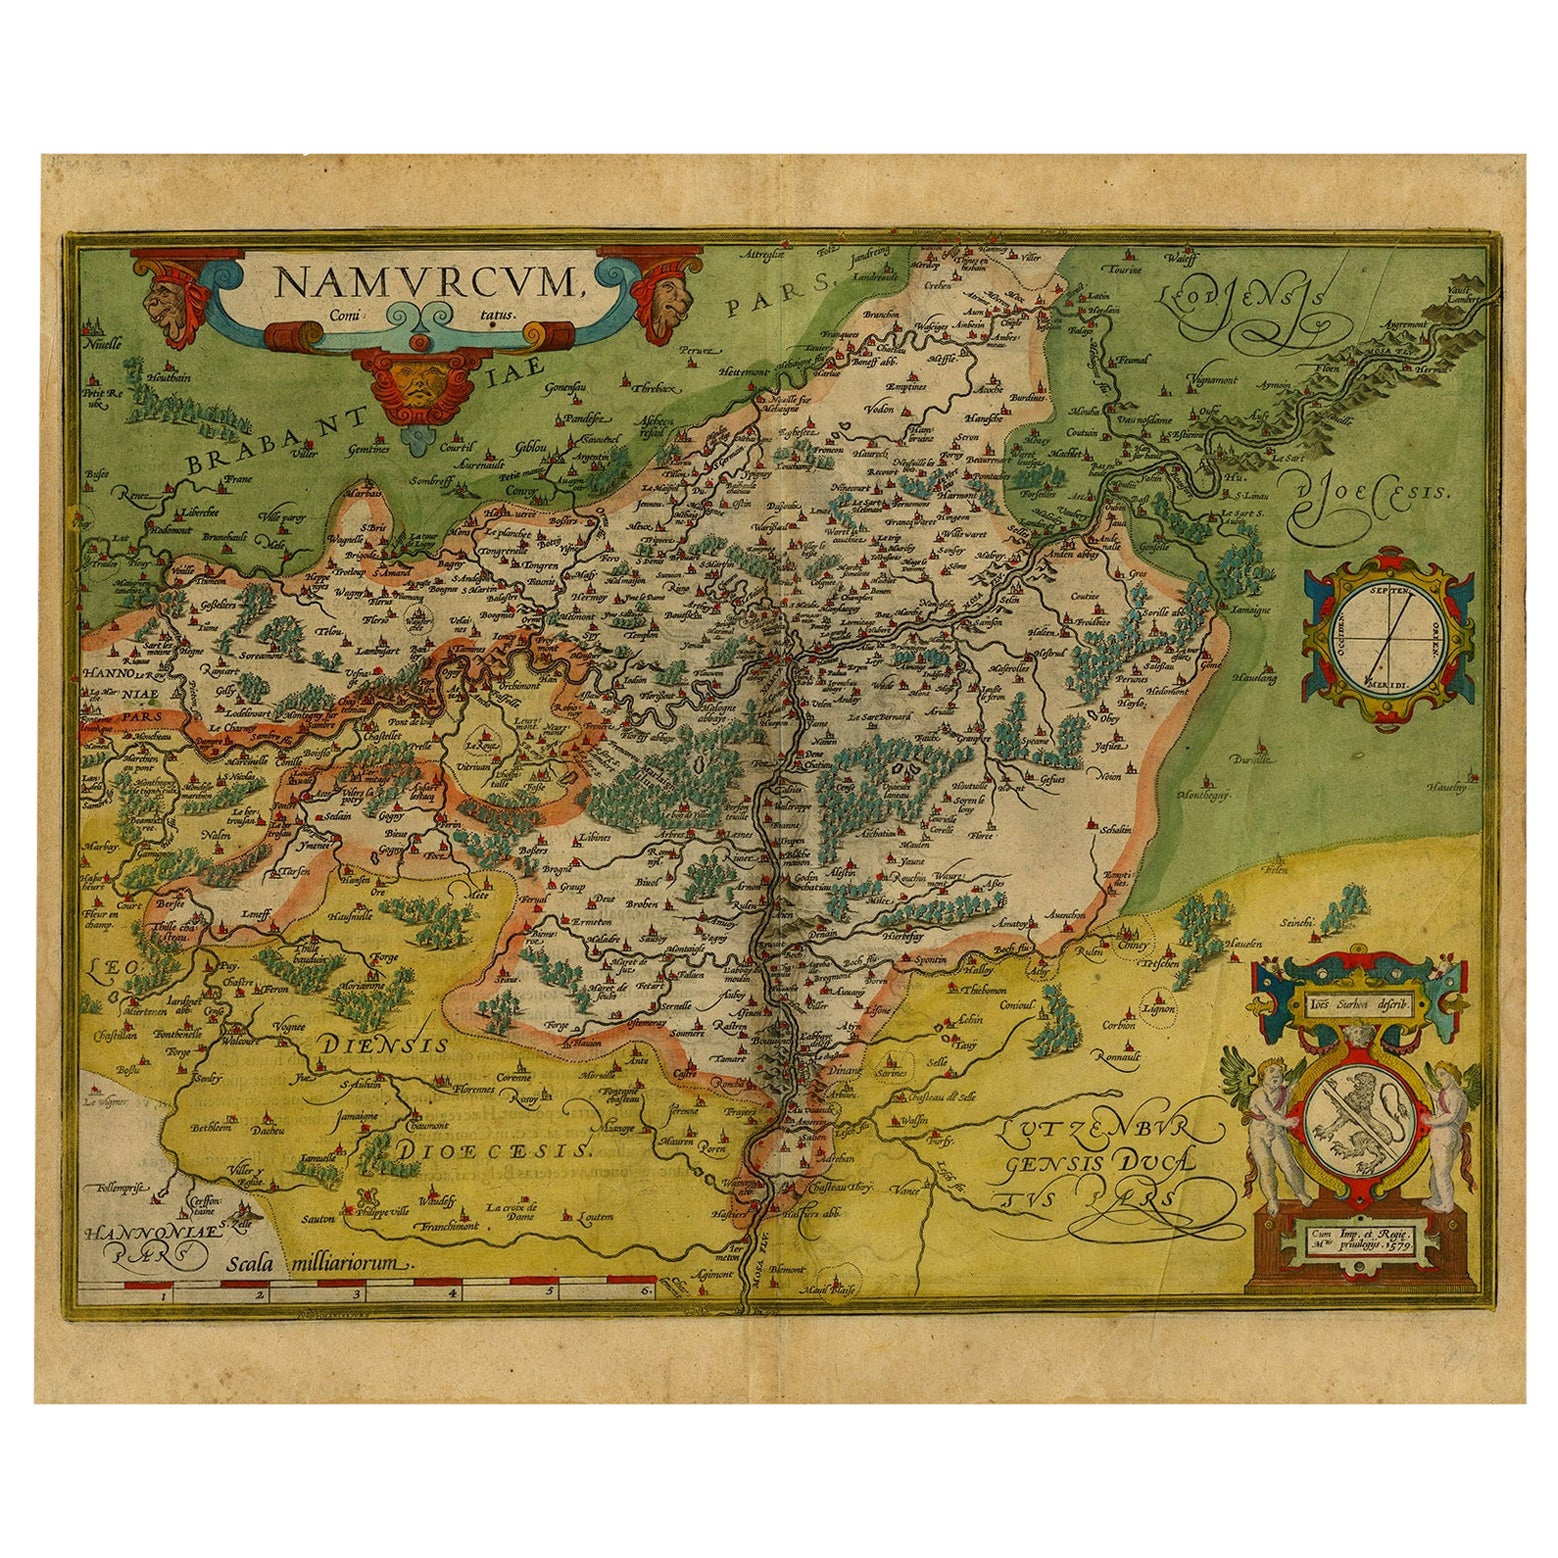 Antique Map of the Namen or Namur Region in Wallonia, Belgium